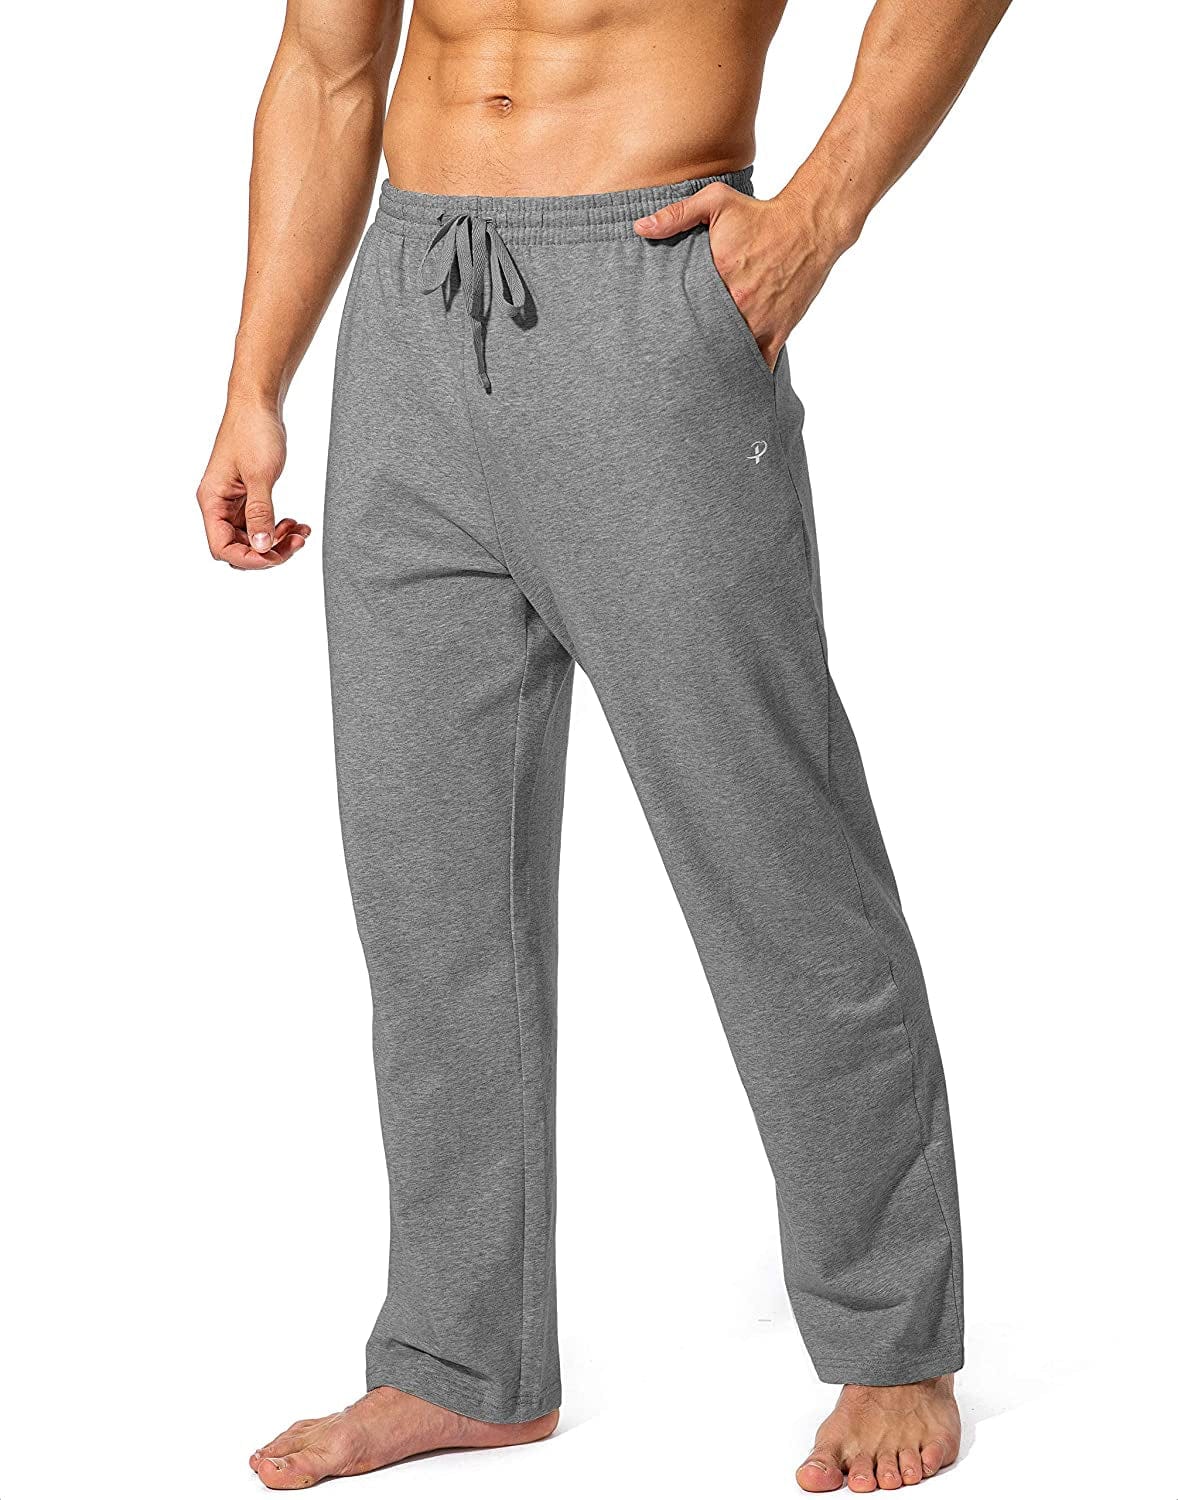 Pudolla Men'S Cotton Yoga Sweatpants Athletic Lounge Pants Open